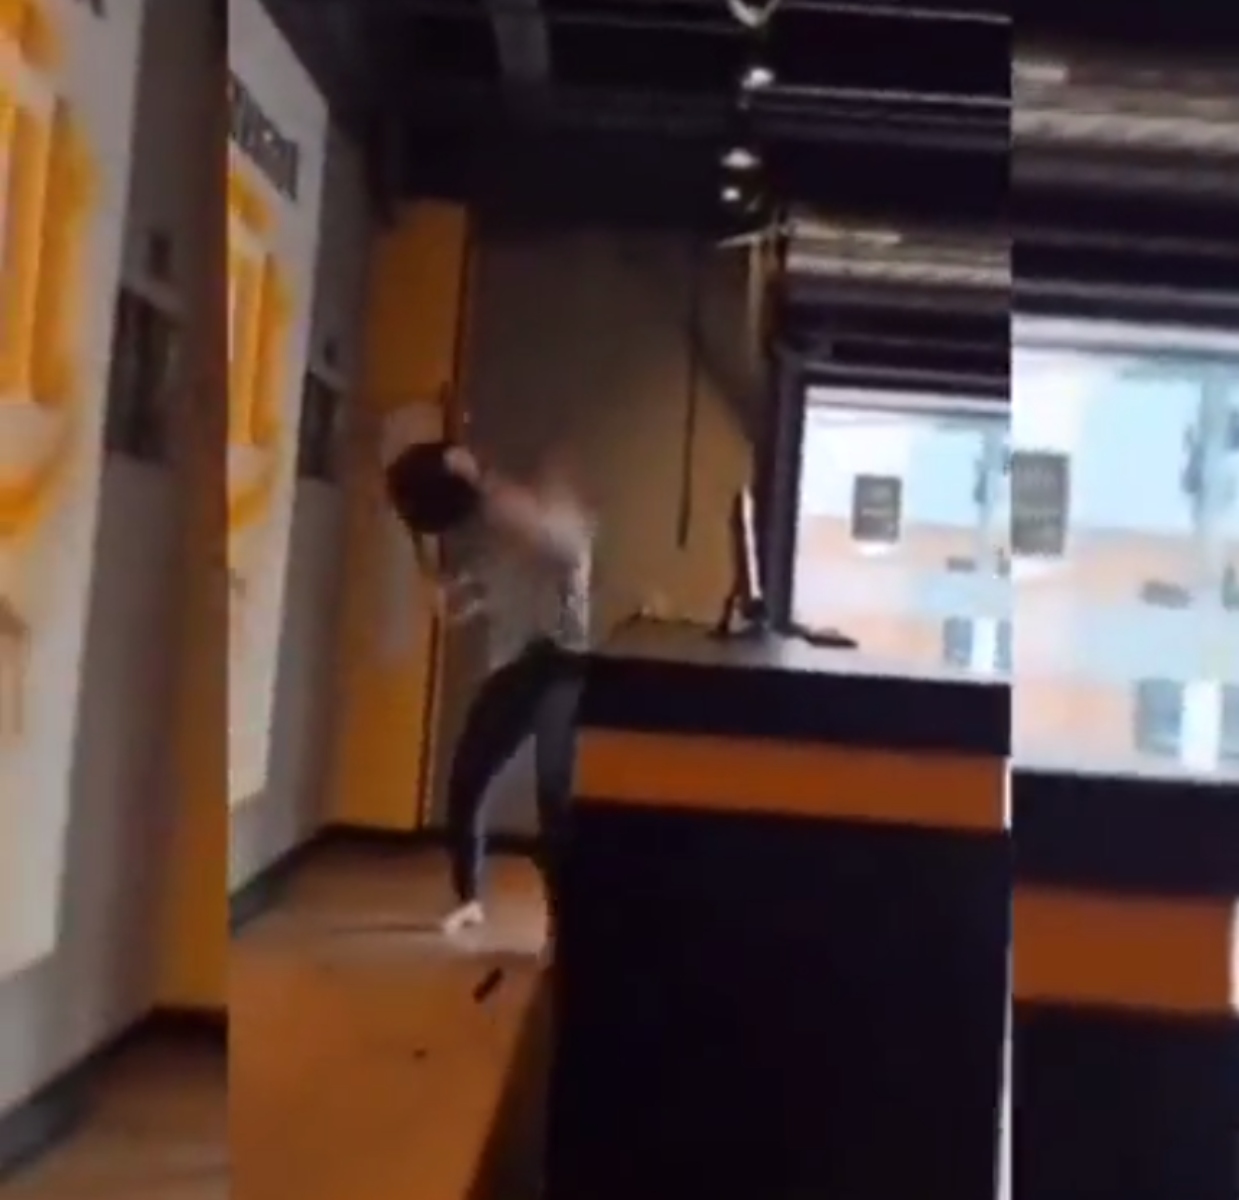  Um vídeo que circula nas redes sociais mostra a mulher batendo repetidamente com uma cadeira nos computadores, deixando um deles pendurado por um fio e derrubando o outro no chão. 